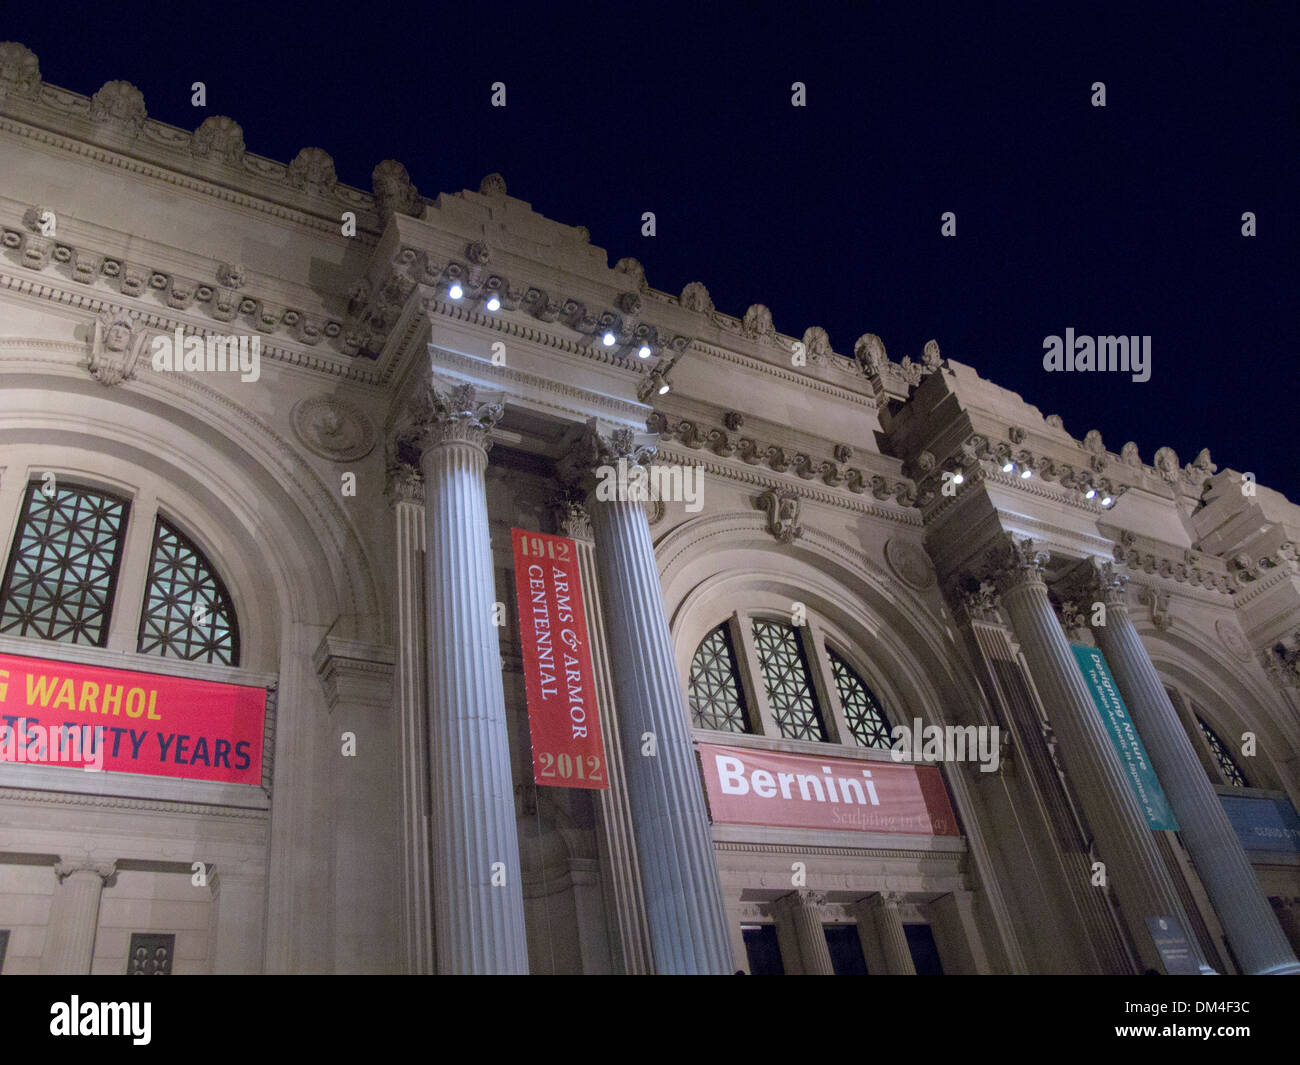 Une vue de la nuit du Metropolitan Museum of Art sur la Cinquième Avenue à New York City, USA. Une bannière orne l'entrée de Bernini. Banque D'Images